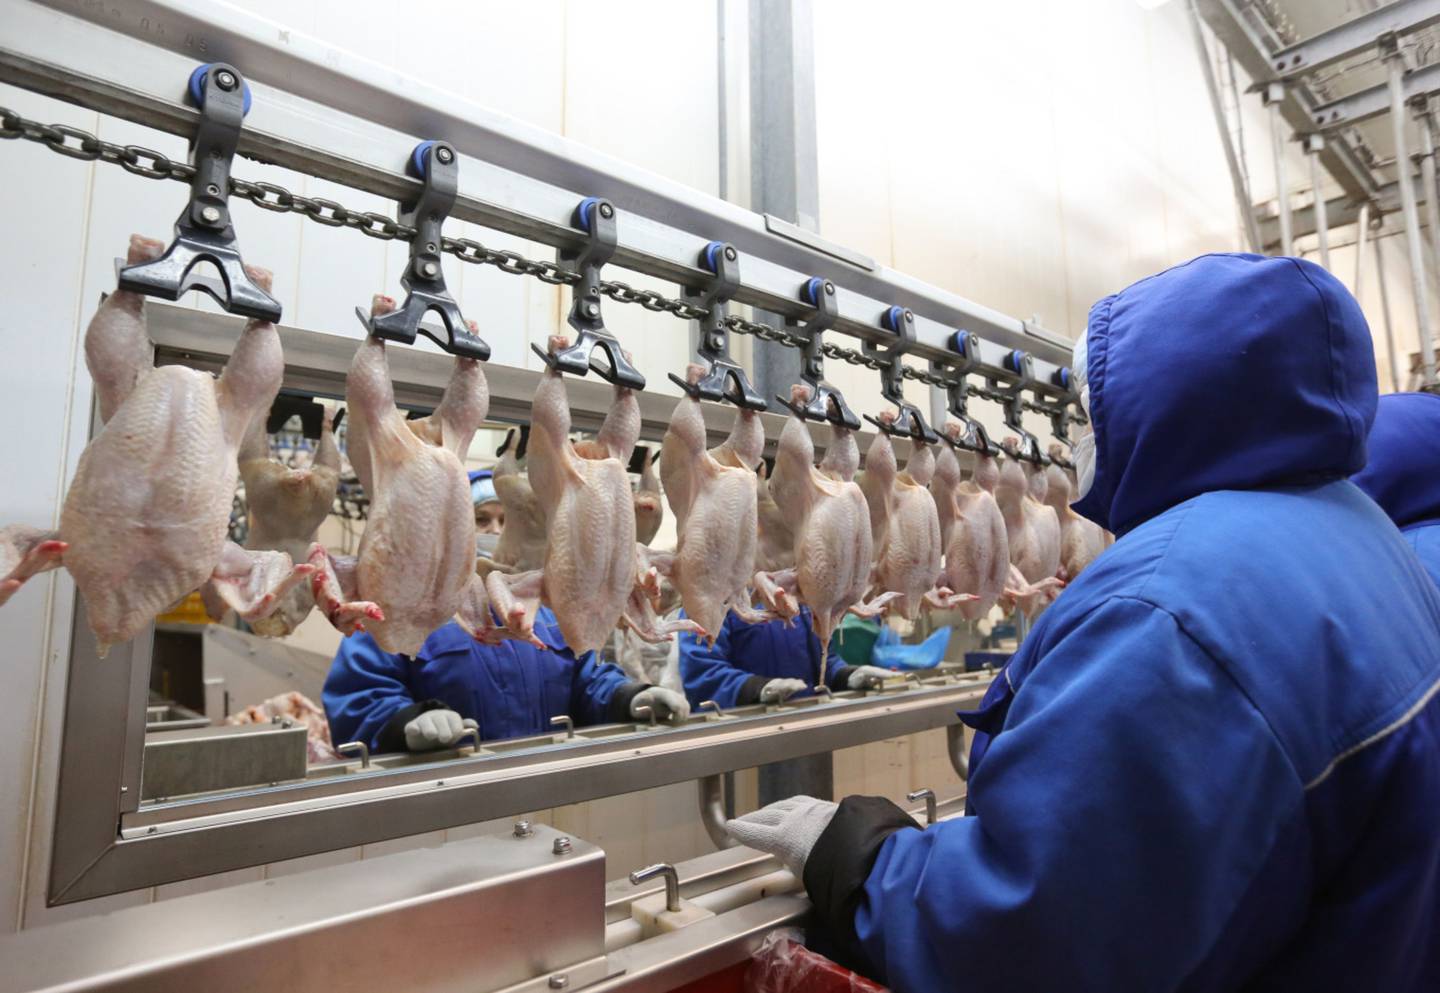 Arábia Saudita, segundo maior cliente da indústria de frango do Brasil, propôs reduzir o prazo de validade do produto congelado importado para apenas três meses. Felizmente, decisão não foi adiante